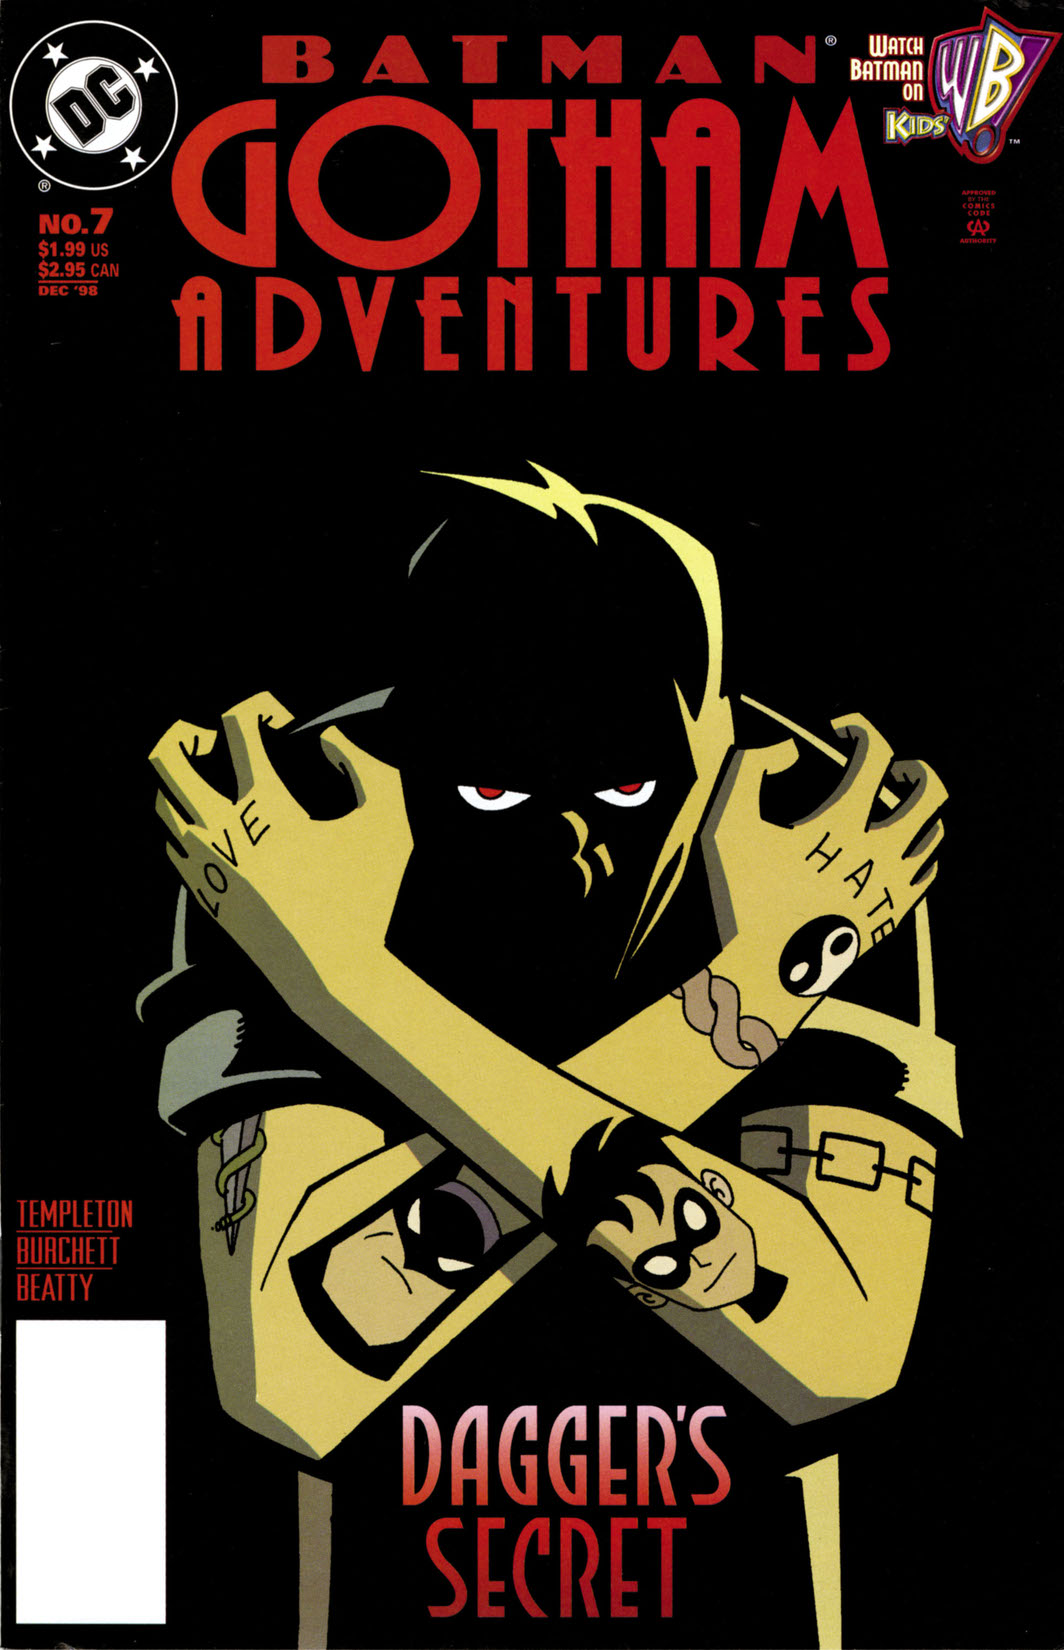 Batman: Gotham Adventures #7 preview images